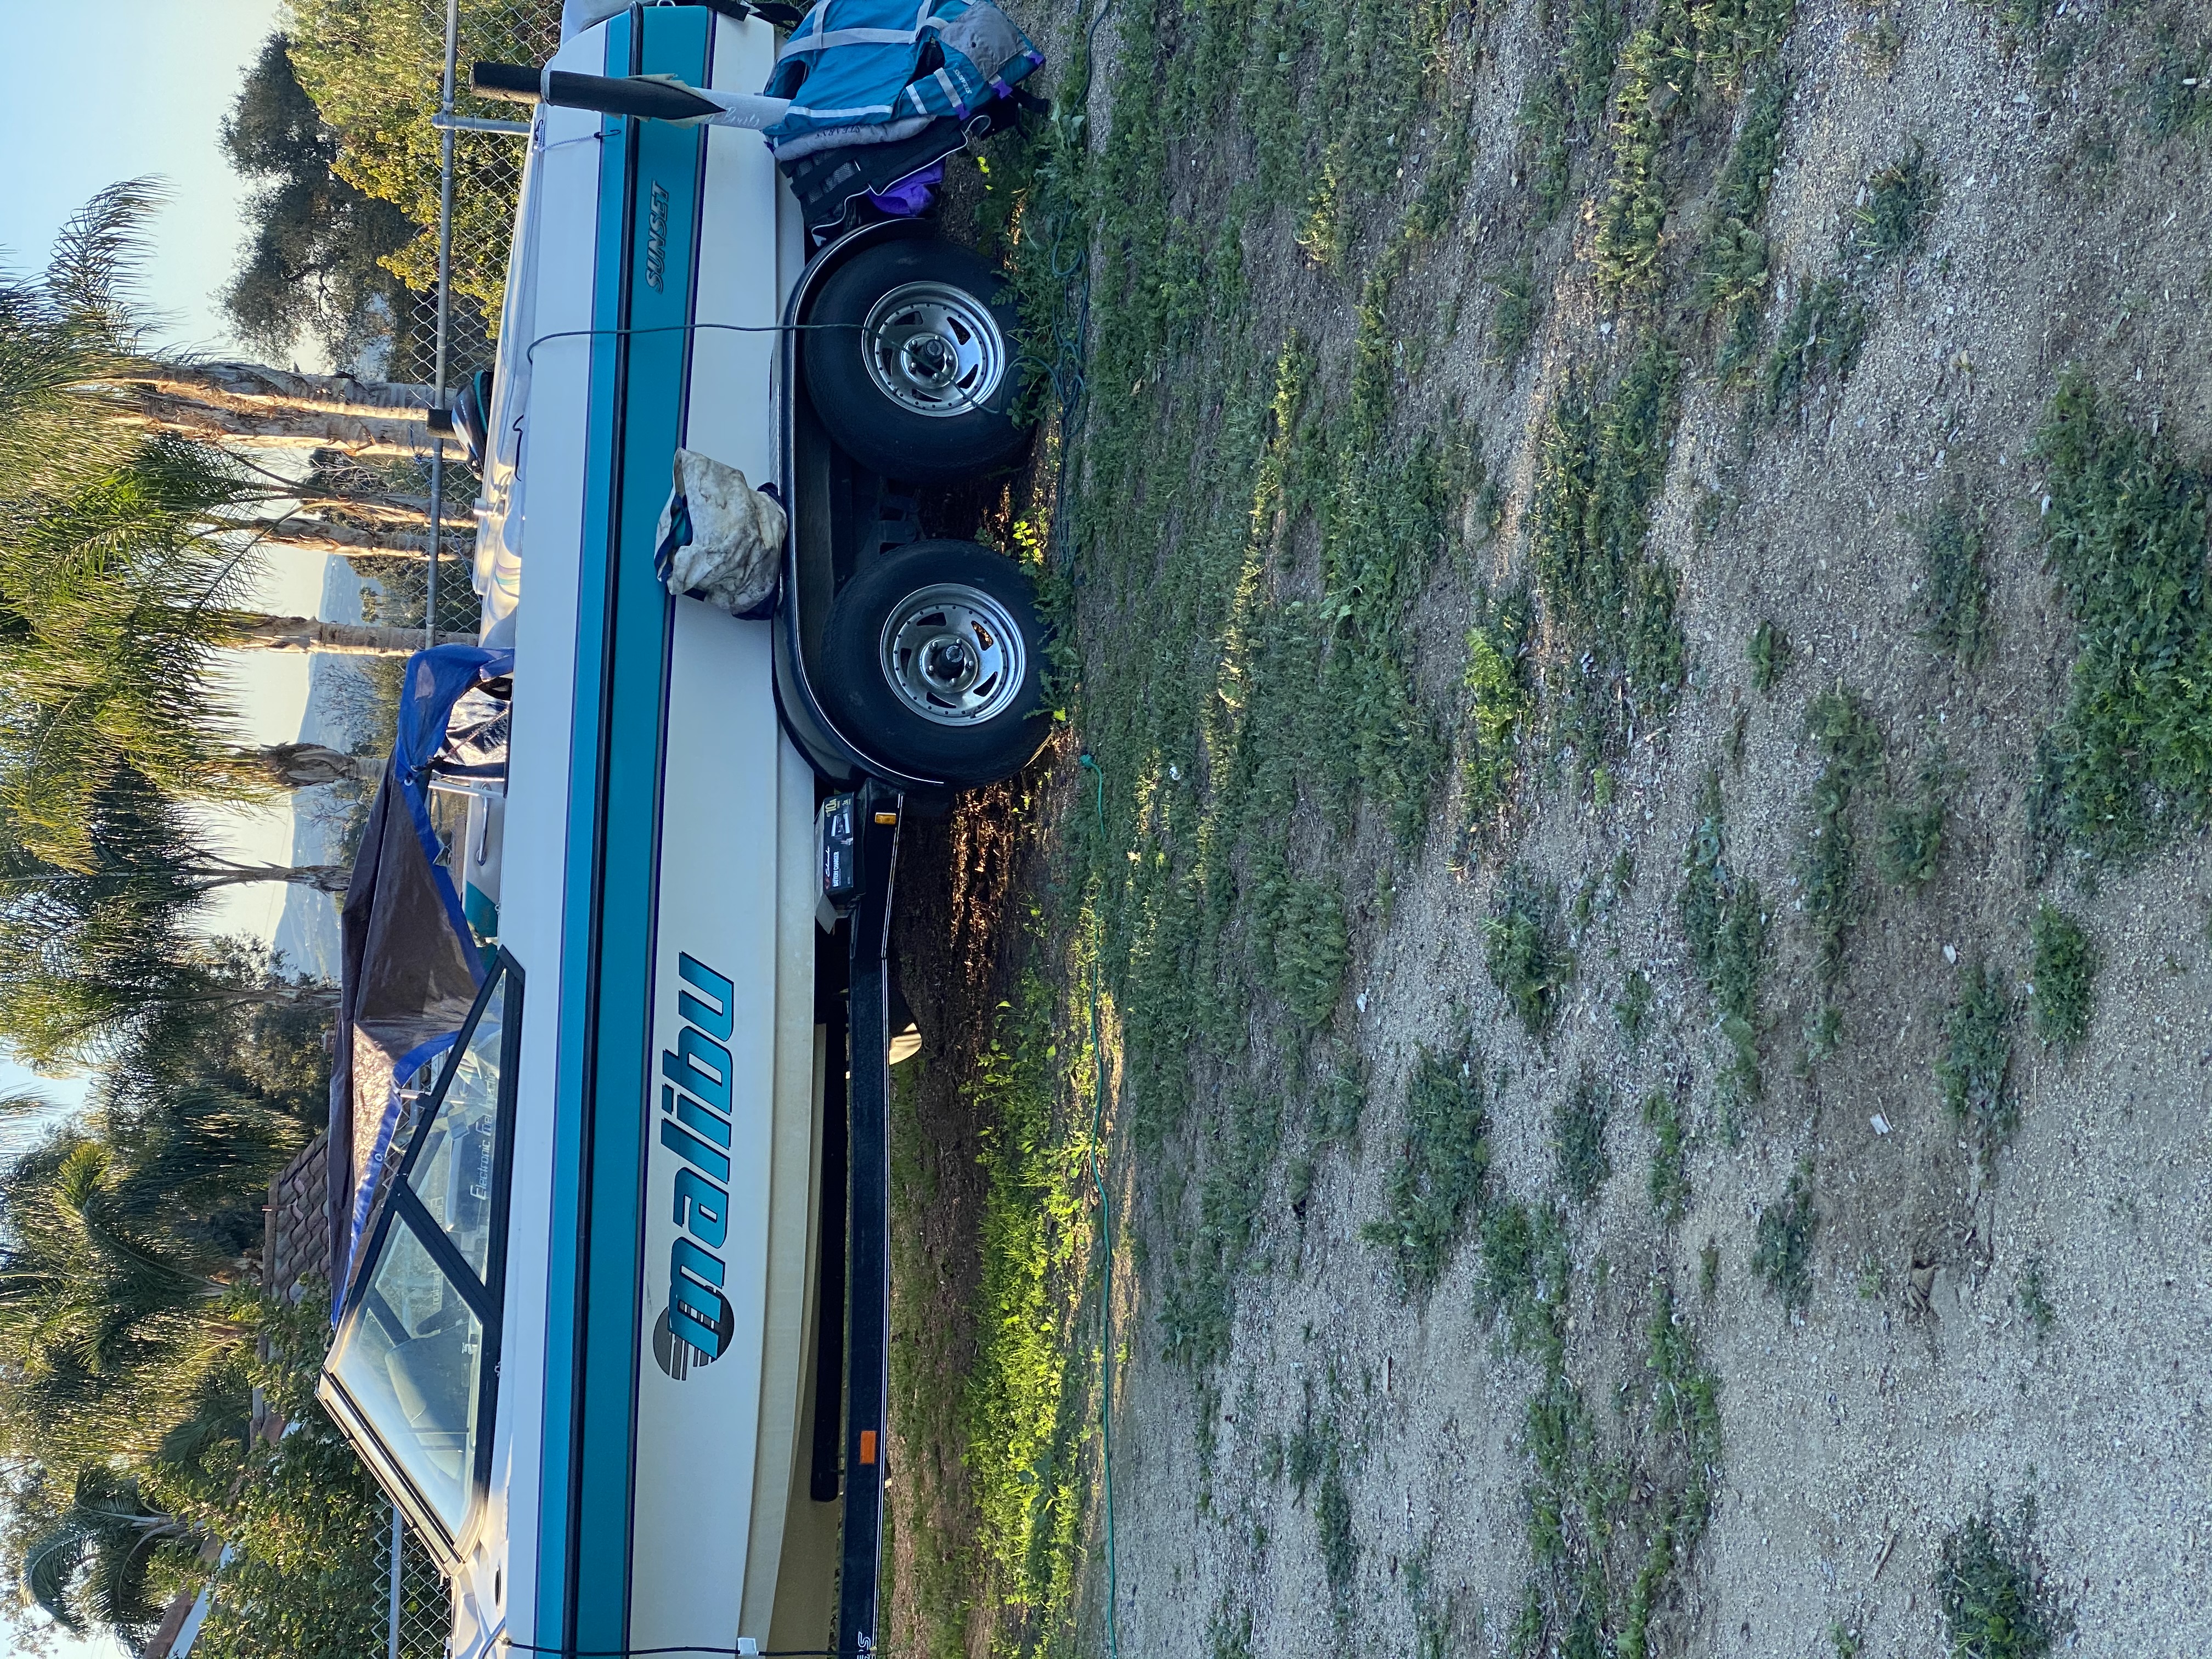 1997 21 foot MALIBU vlx Ski Boat for sale in Fallbrook, CA - image 4 